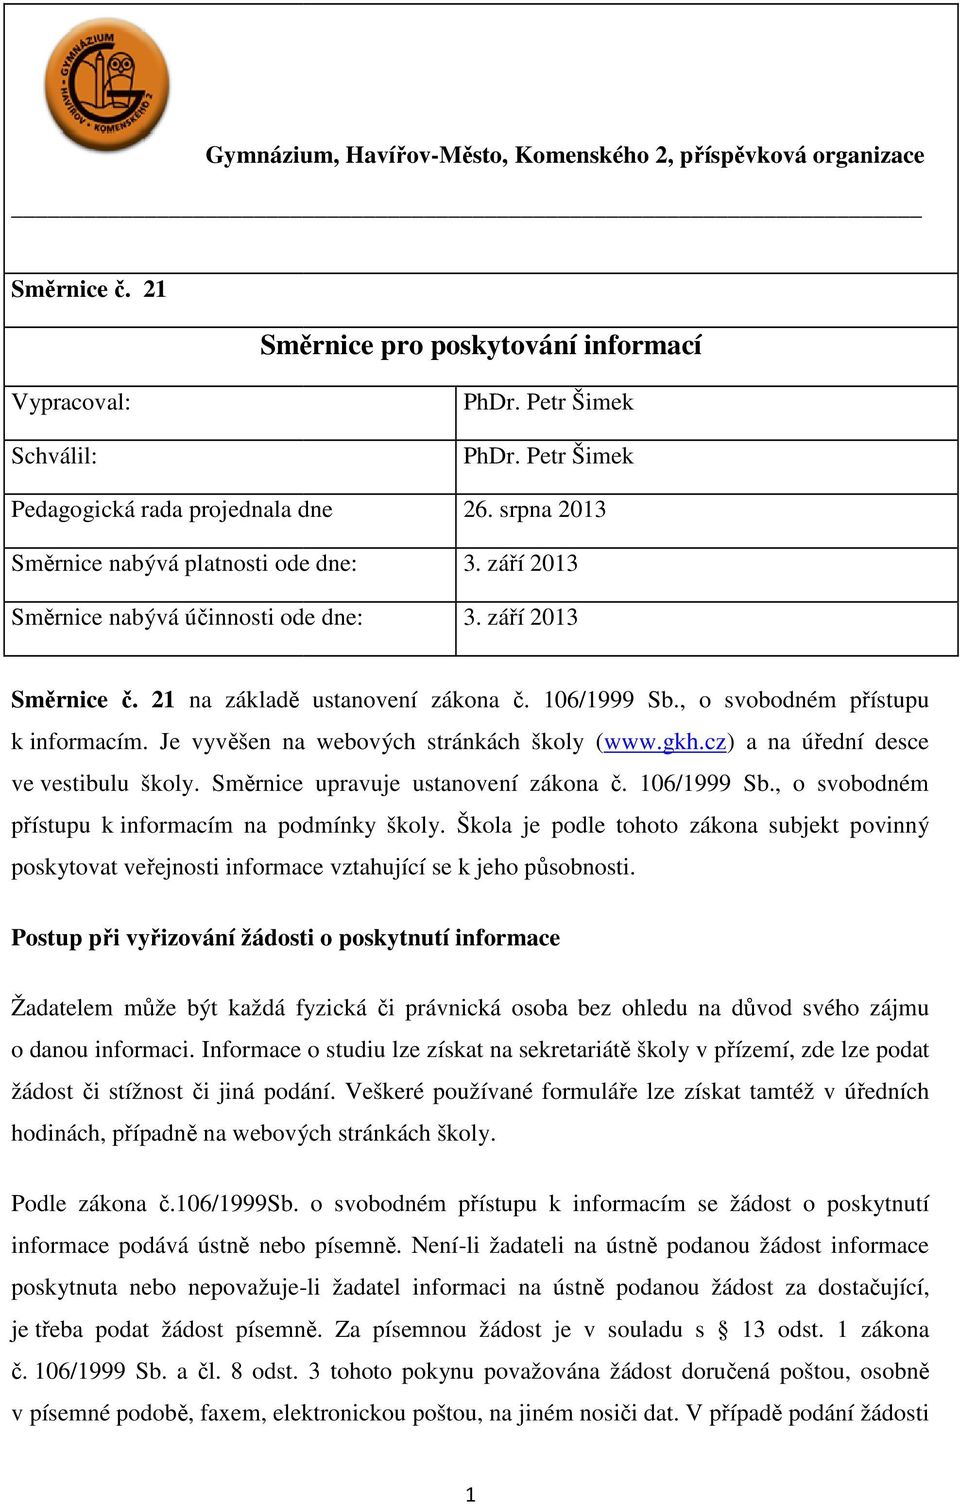 21 na základě ě ustanovení zákona č. 106/1999 Sb., o svobodném přístupu k informacím. Je vyvěšen na webových stránkách školy (www.gkh.cz) a na úřední desce ve vestibulu školy.